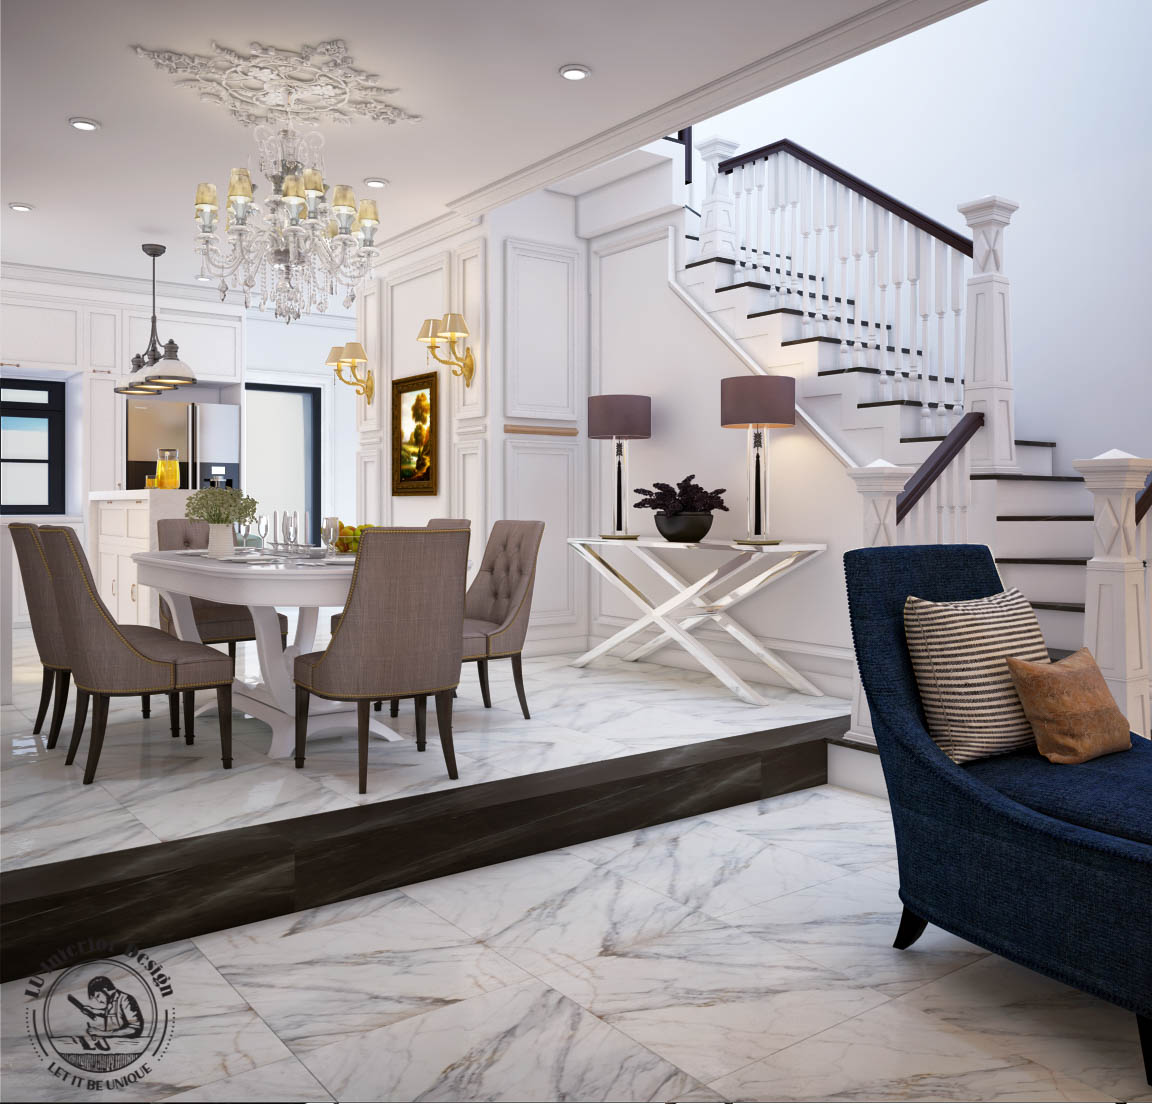 Thiết kế chung cư với phong cách Tân cổ điển | Căn hộ Lakeview City - LU Design thực hiện.